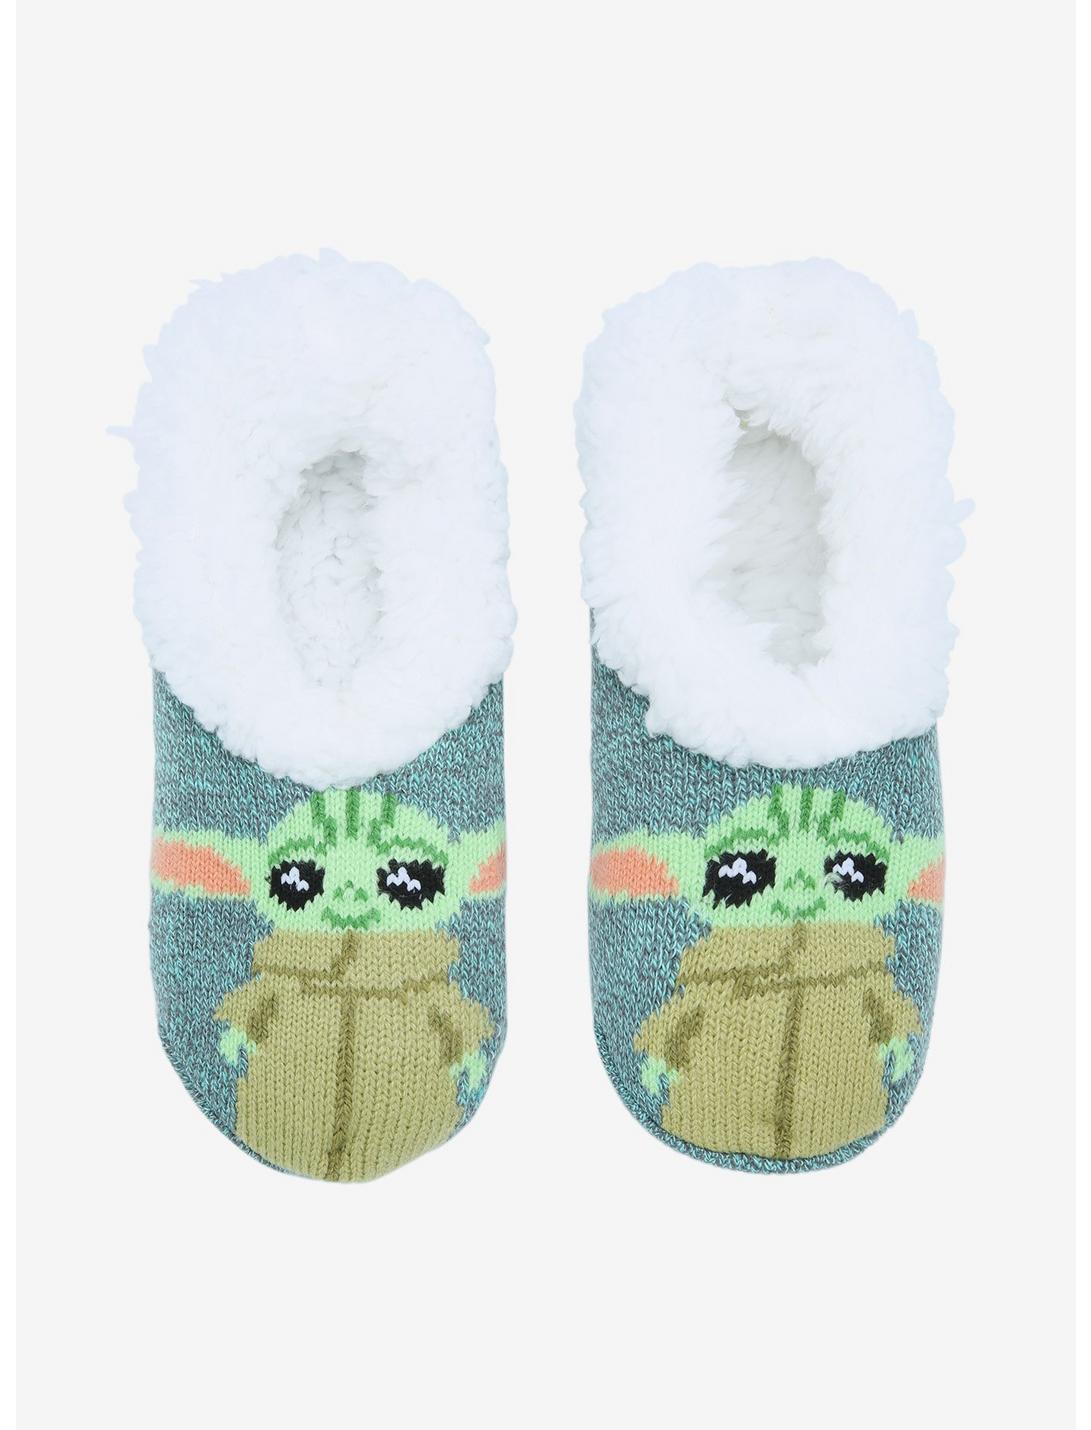 Disney Lilo & Stitch Pastel Cozy Fluffy Slipper Socks Anti Slip NWT licensed 